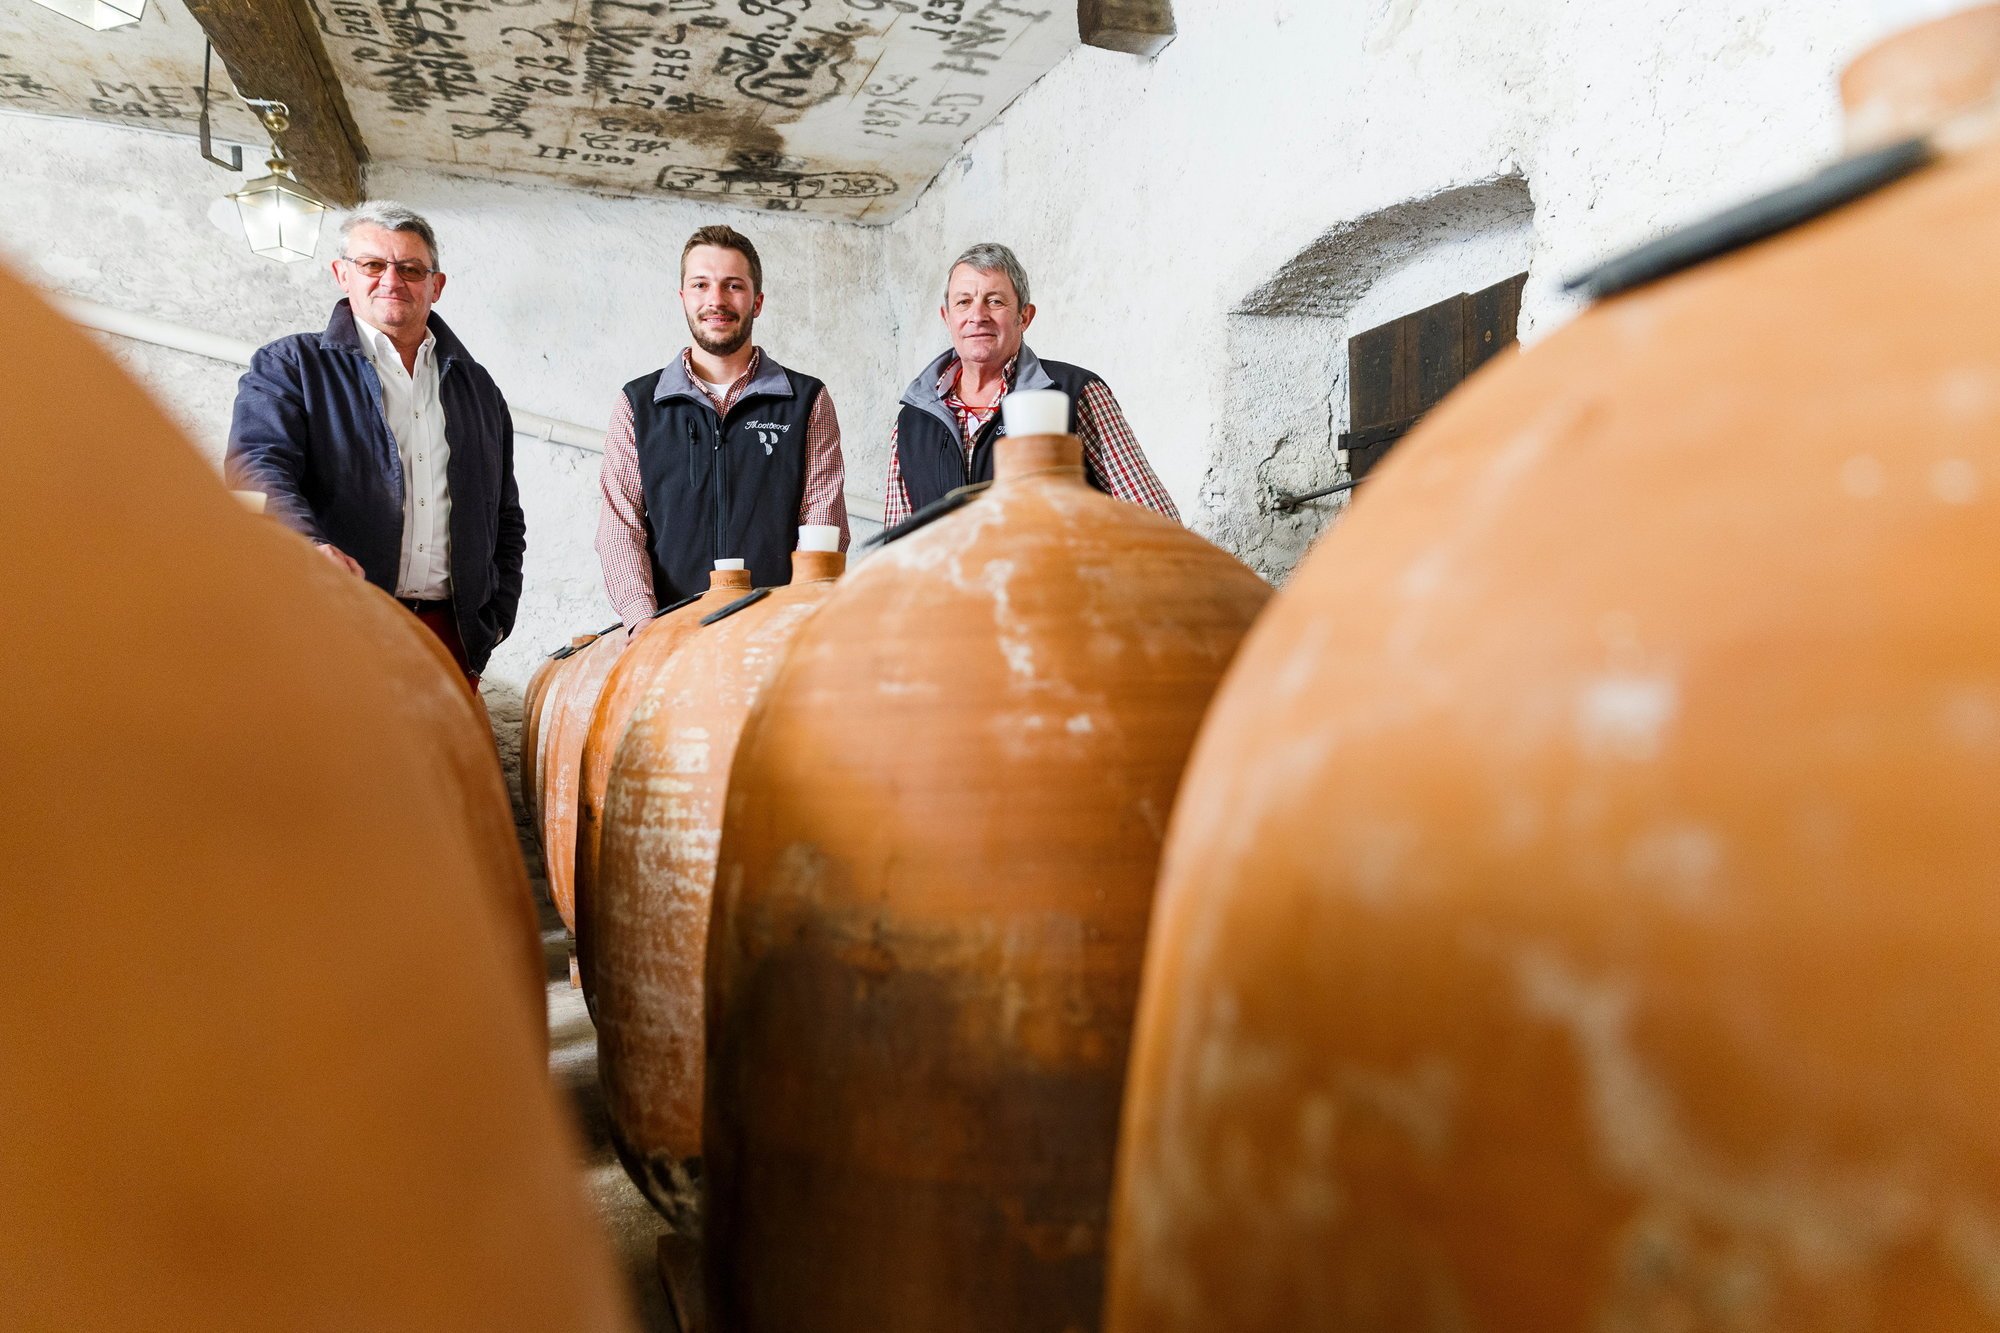 Rodolphe, Paul et Maurice de Watteville ont dévoilé leur "Cuvée confidentielle", cinq vins monocépages élevés en amphore dans le plus grand secret, dans leur cave du Domaine de Montbenay à Mont-sur-Rolle.